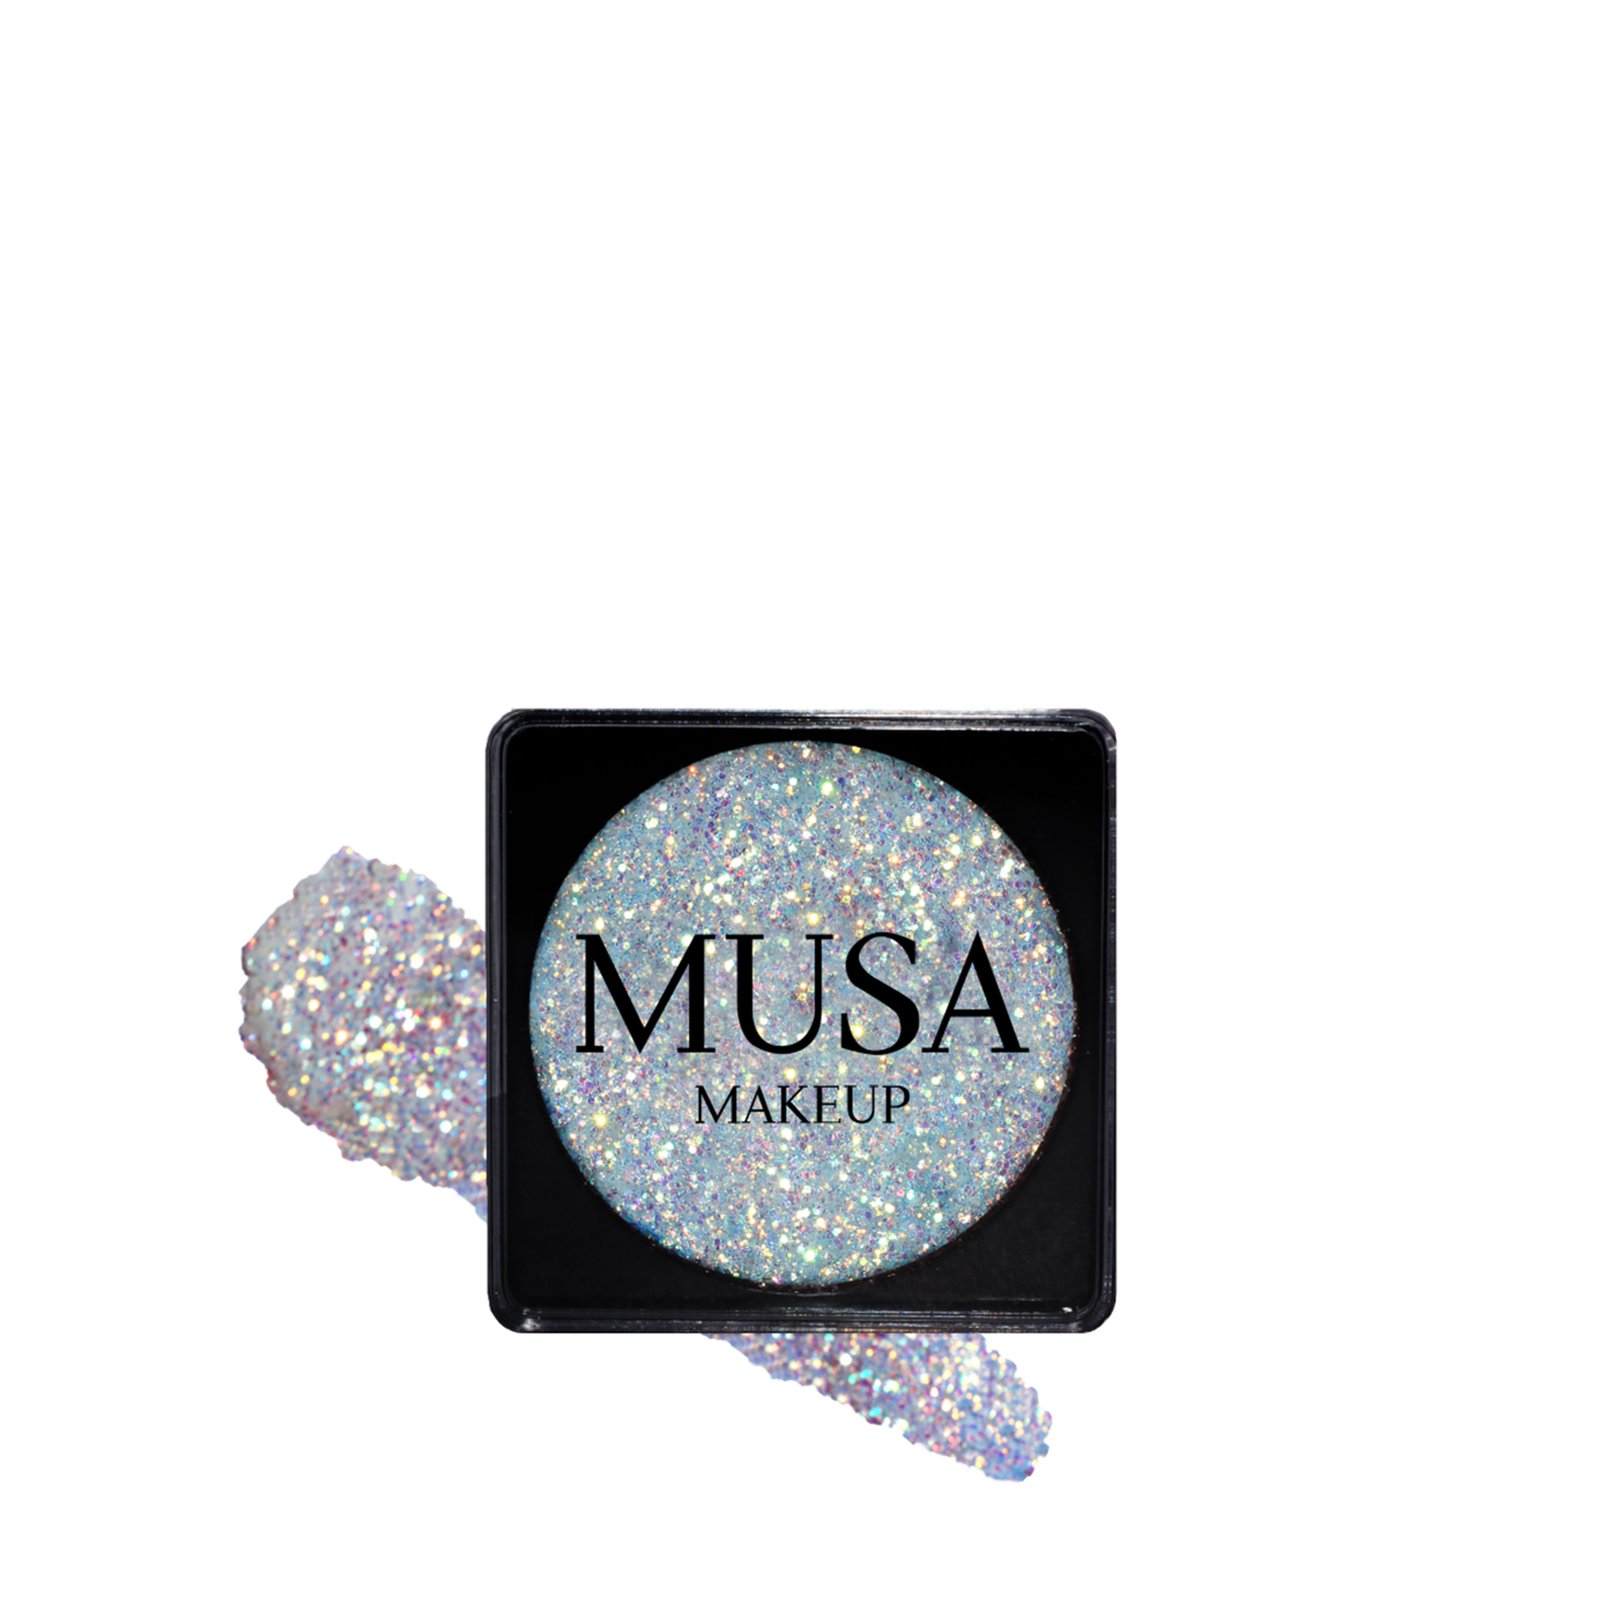 MUSA Makeup Creamy Glitter Celestial 4g (0.14 oz)